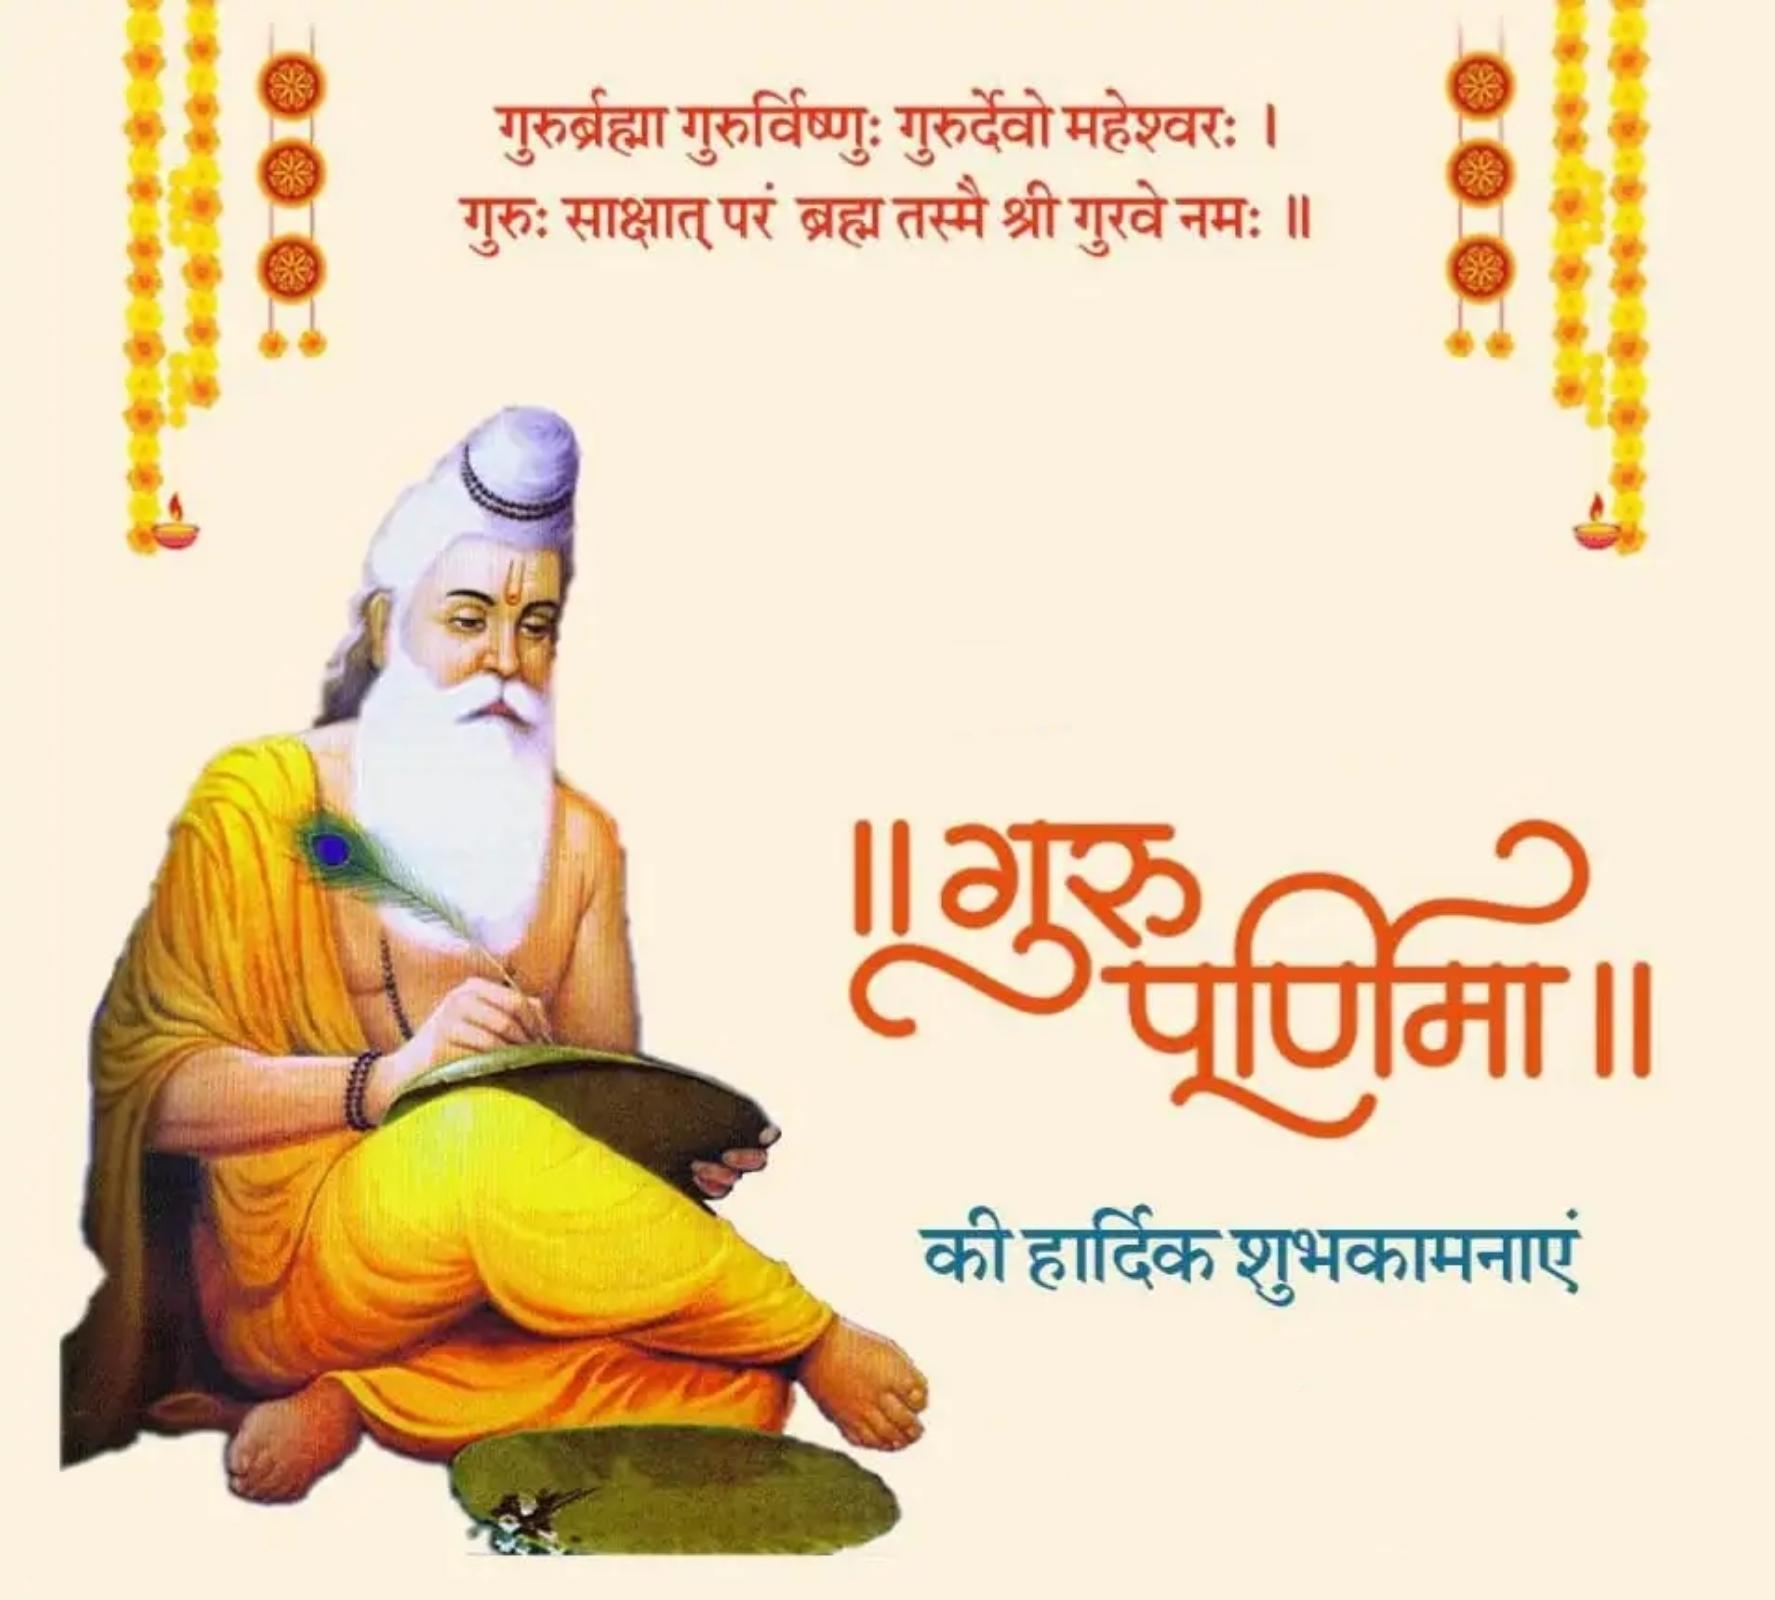 Guru Purnima Ki Hardik Shubhkamnaye Images Download - ShayariMaza